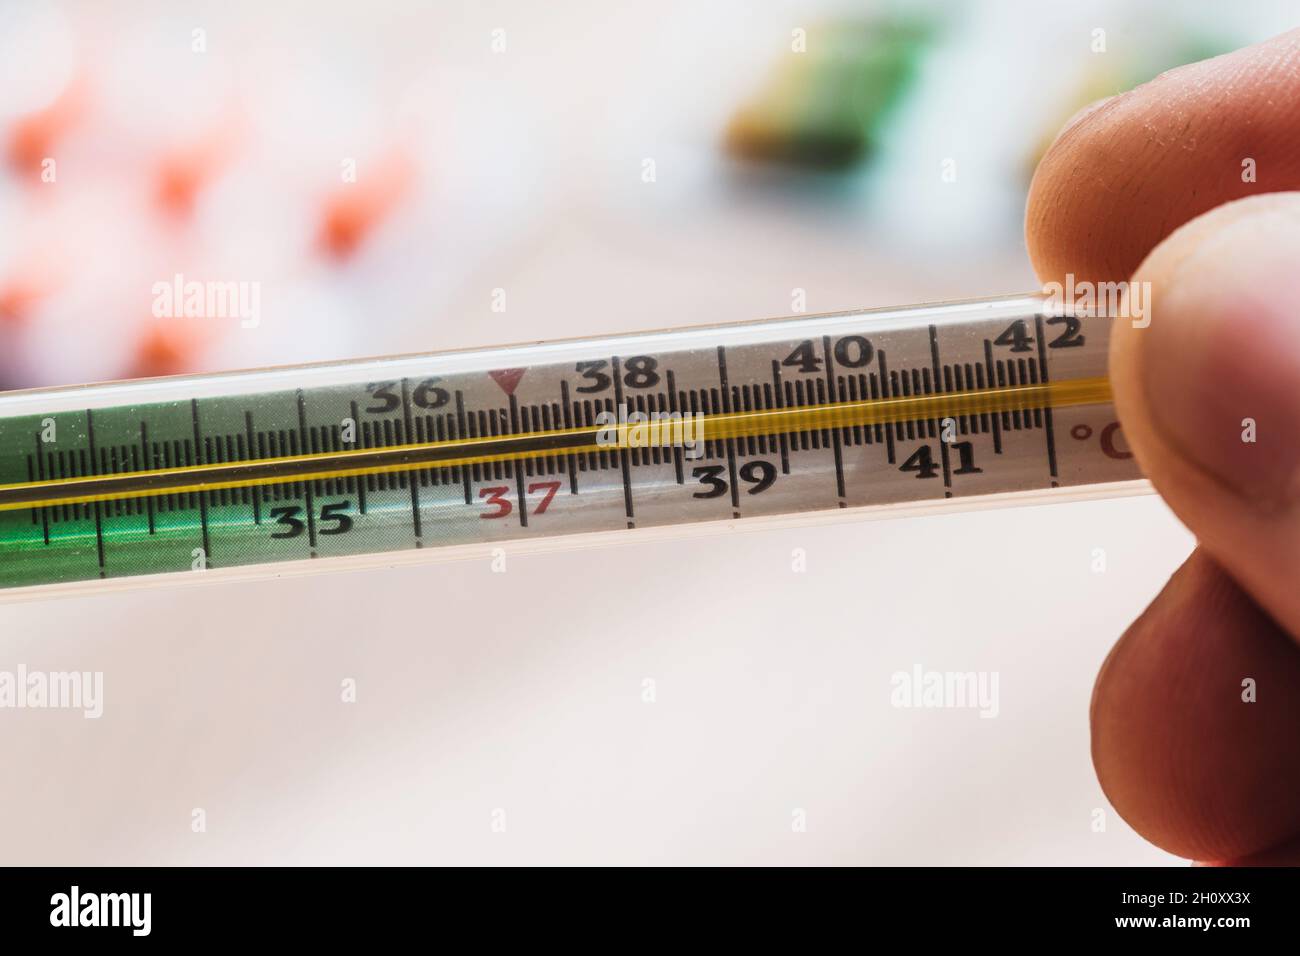 Temperatura 38 en un termómetro de mercurio - fiebre en caso de enfermedad  - epidemia viral Fotografía de stock - Alamy